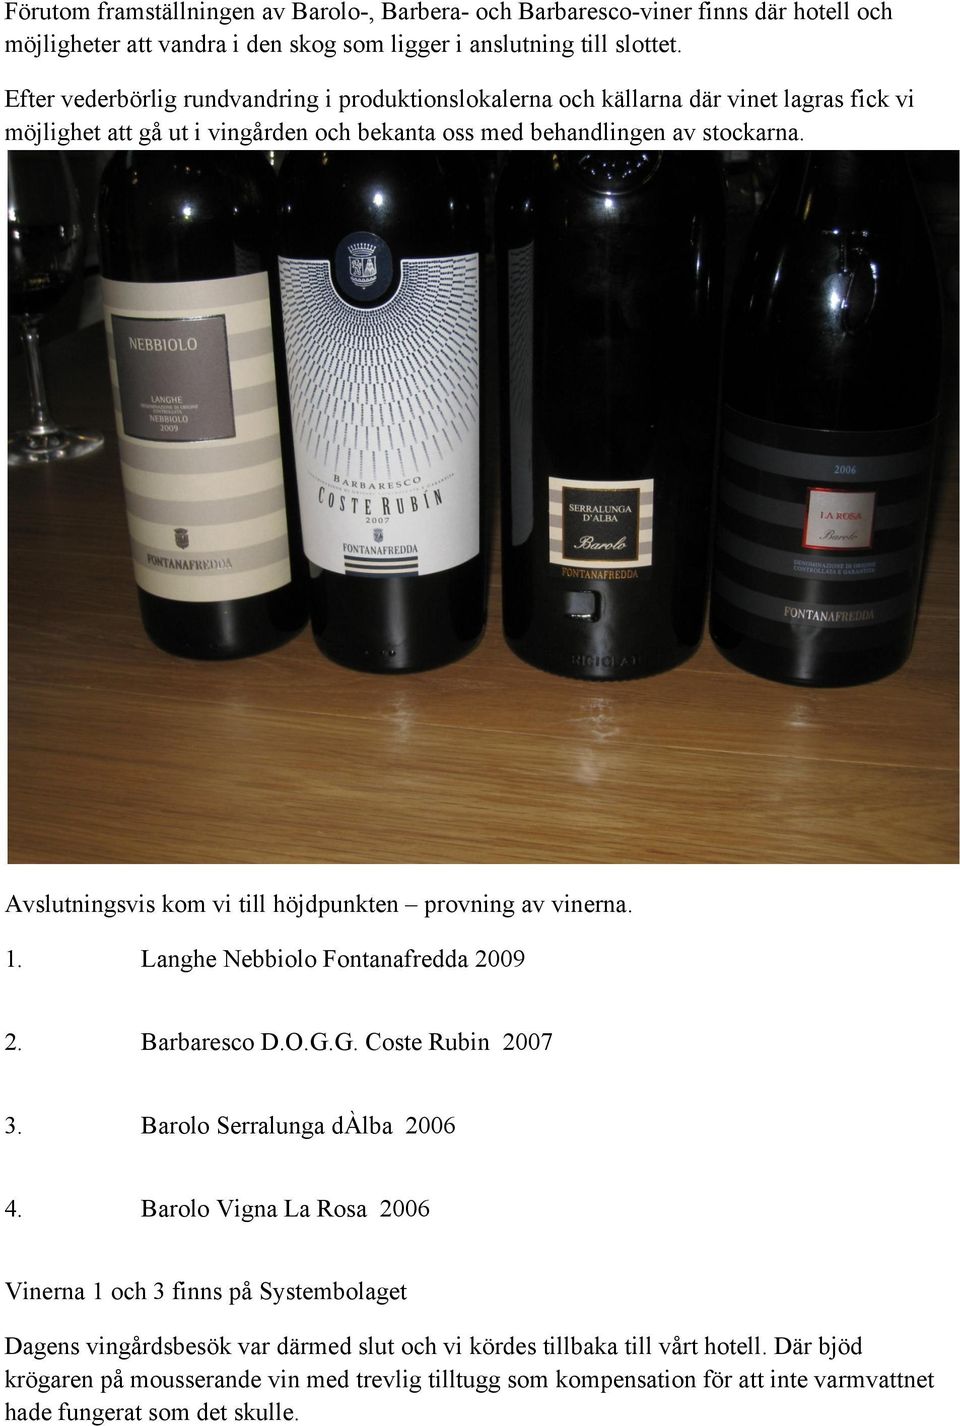 Avslutningsvis kom vi till höjdpunkten provning av vinerna. 1. Langhe Nebbiolo Fontanafredda 2009 2. Barbaresco D.O.G.G. Coste Rubin 2007 3. Barolo Serralunga dàlba 2006 4.